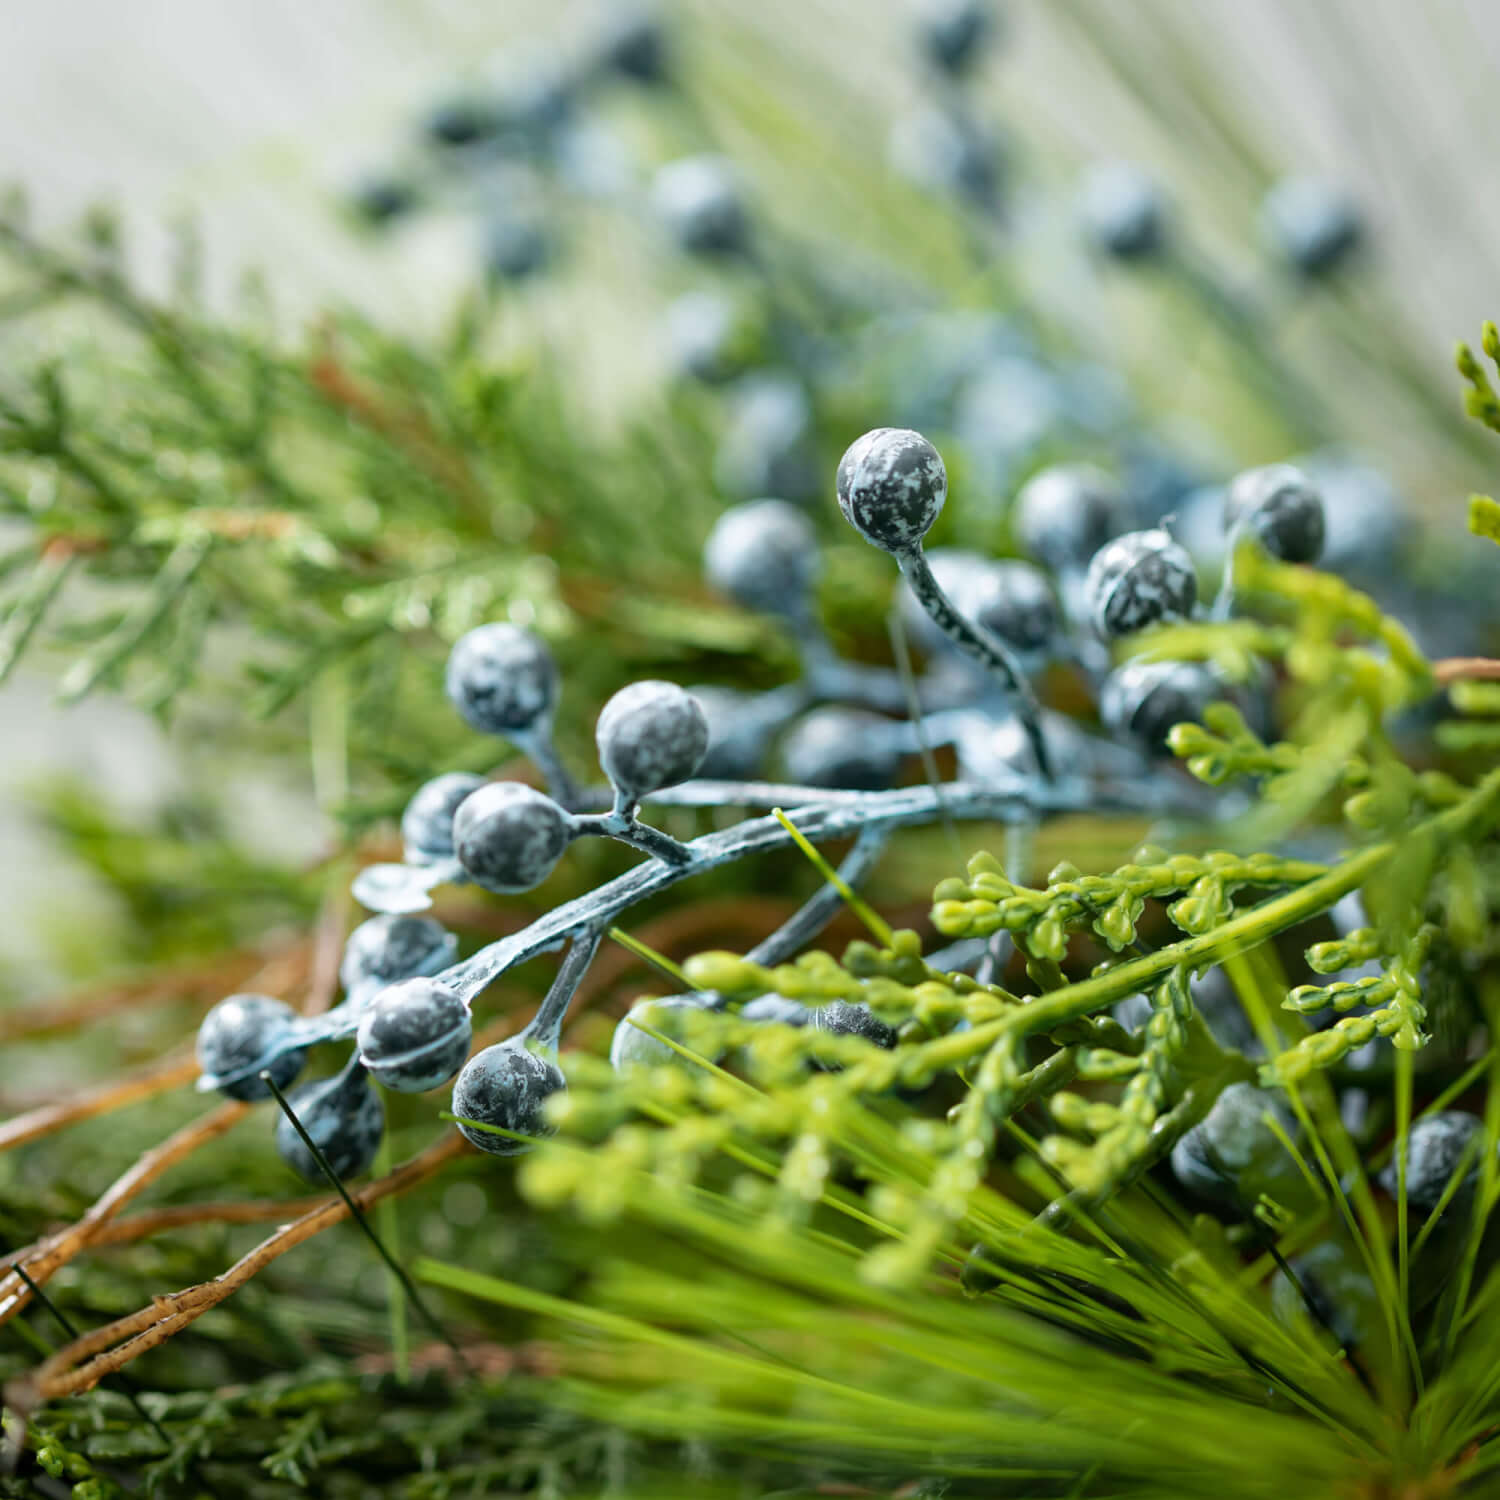 Juniper Berry wreath| 22” Natural Modern Christmas Wreath